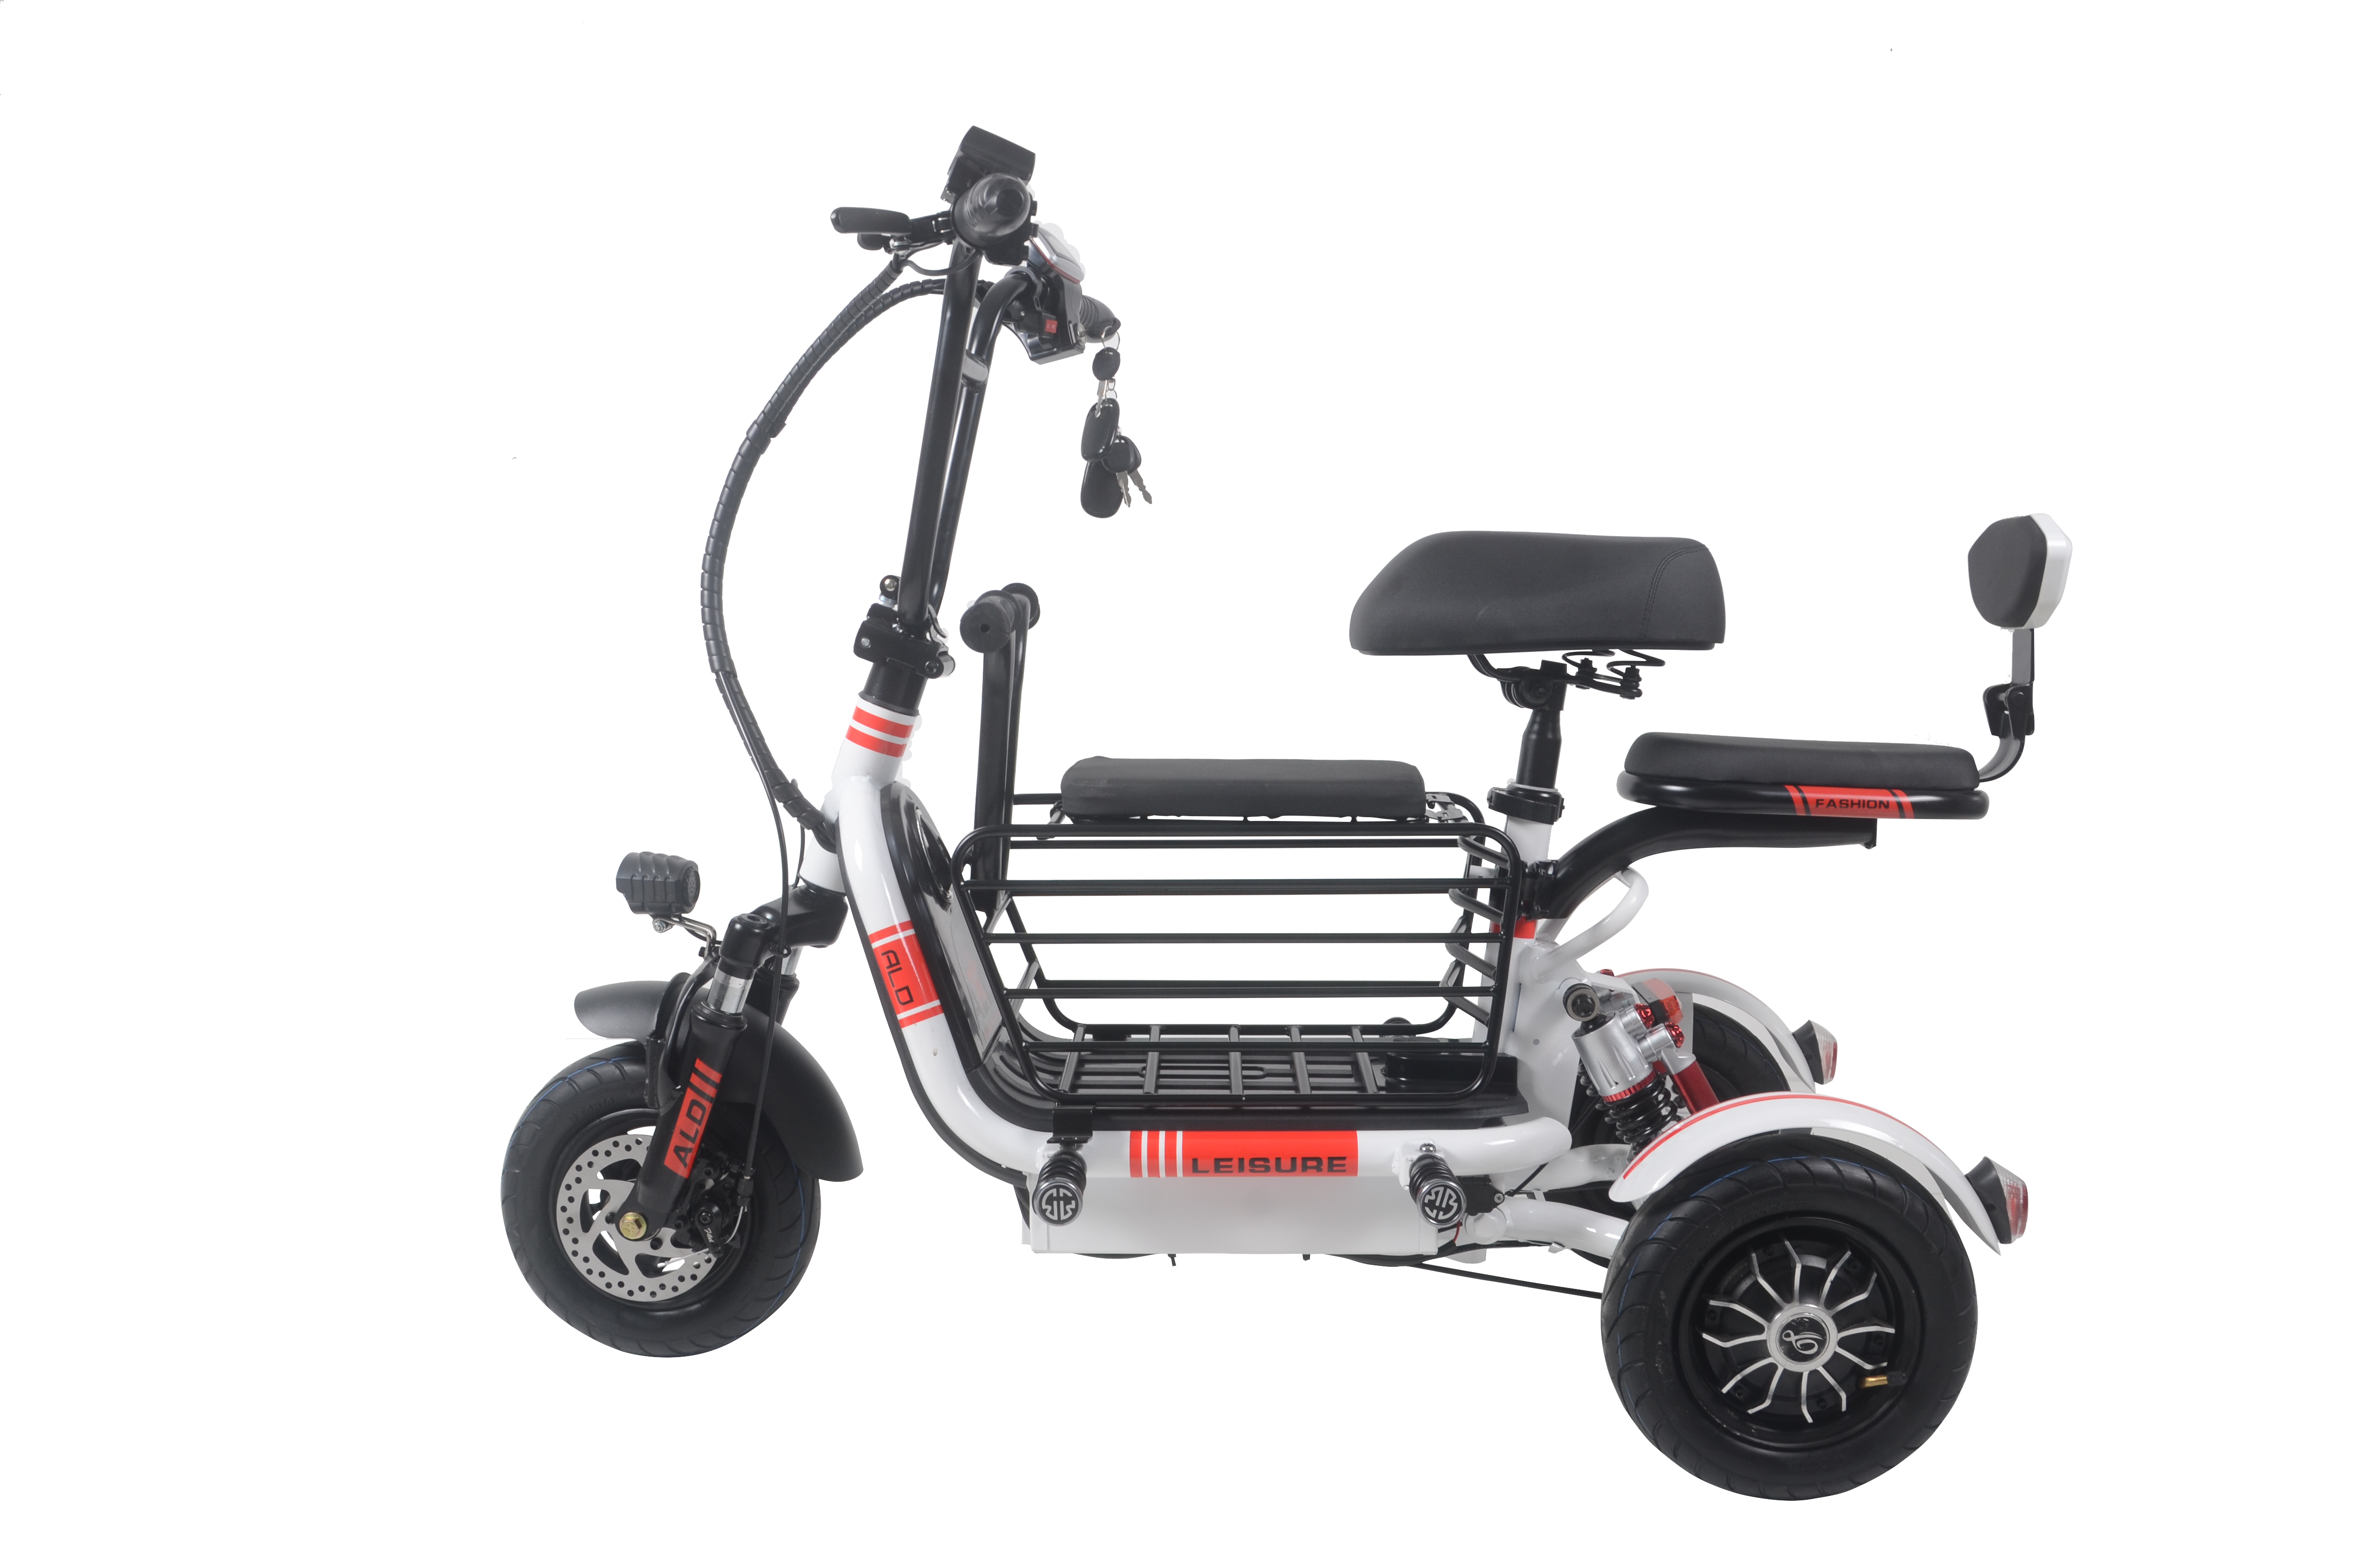 Visokoprodajni kvalitetni 48V električni tricikl za dvije osobe sa vakuumskom gumom i stražnjom bubanj kočnicom, električni skuter tricikl